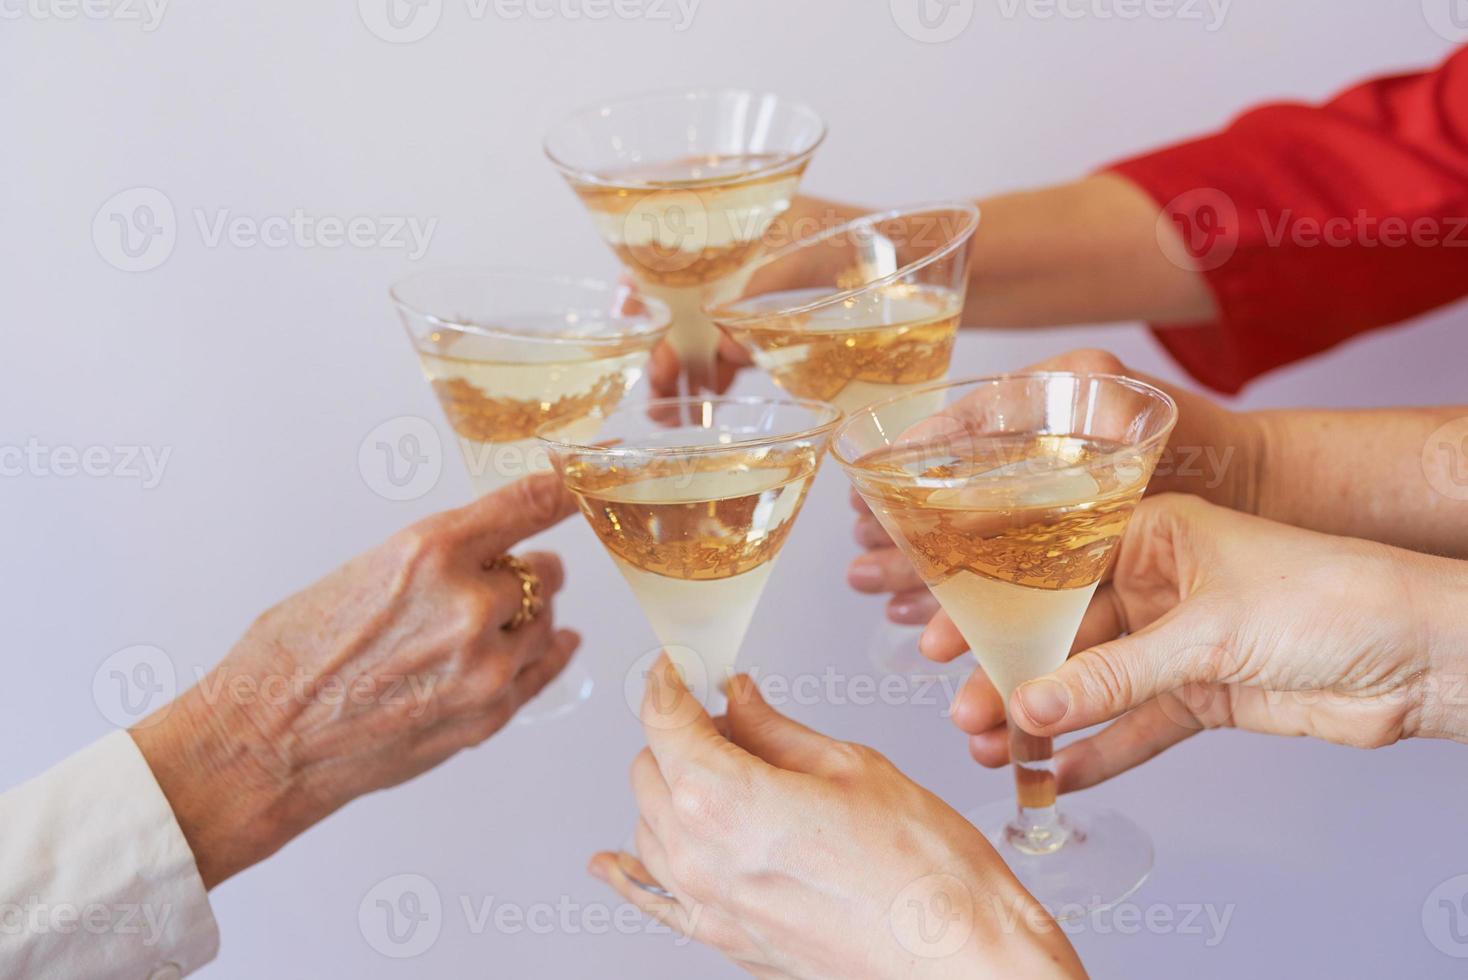 año nuevo celebrando las manos con copas de vino espumoso blanco. navidad, familia, amigos, celebrando, concepto de año nuevo foto